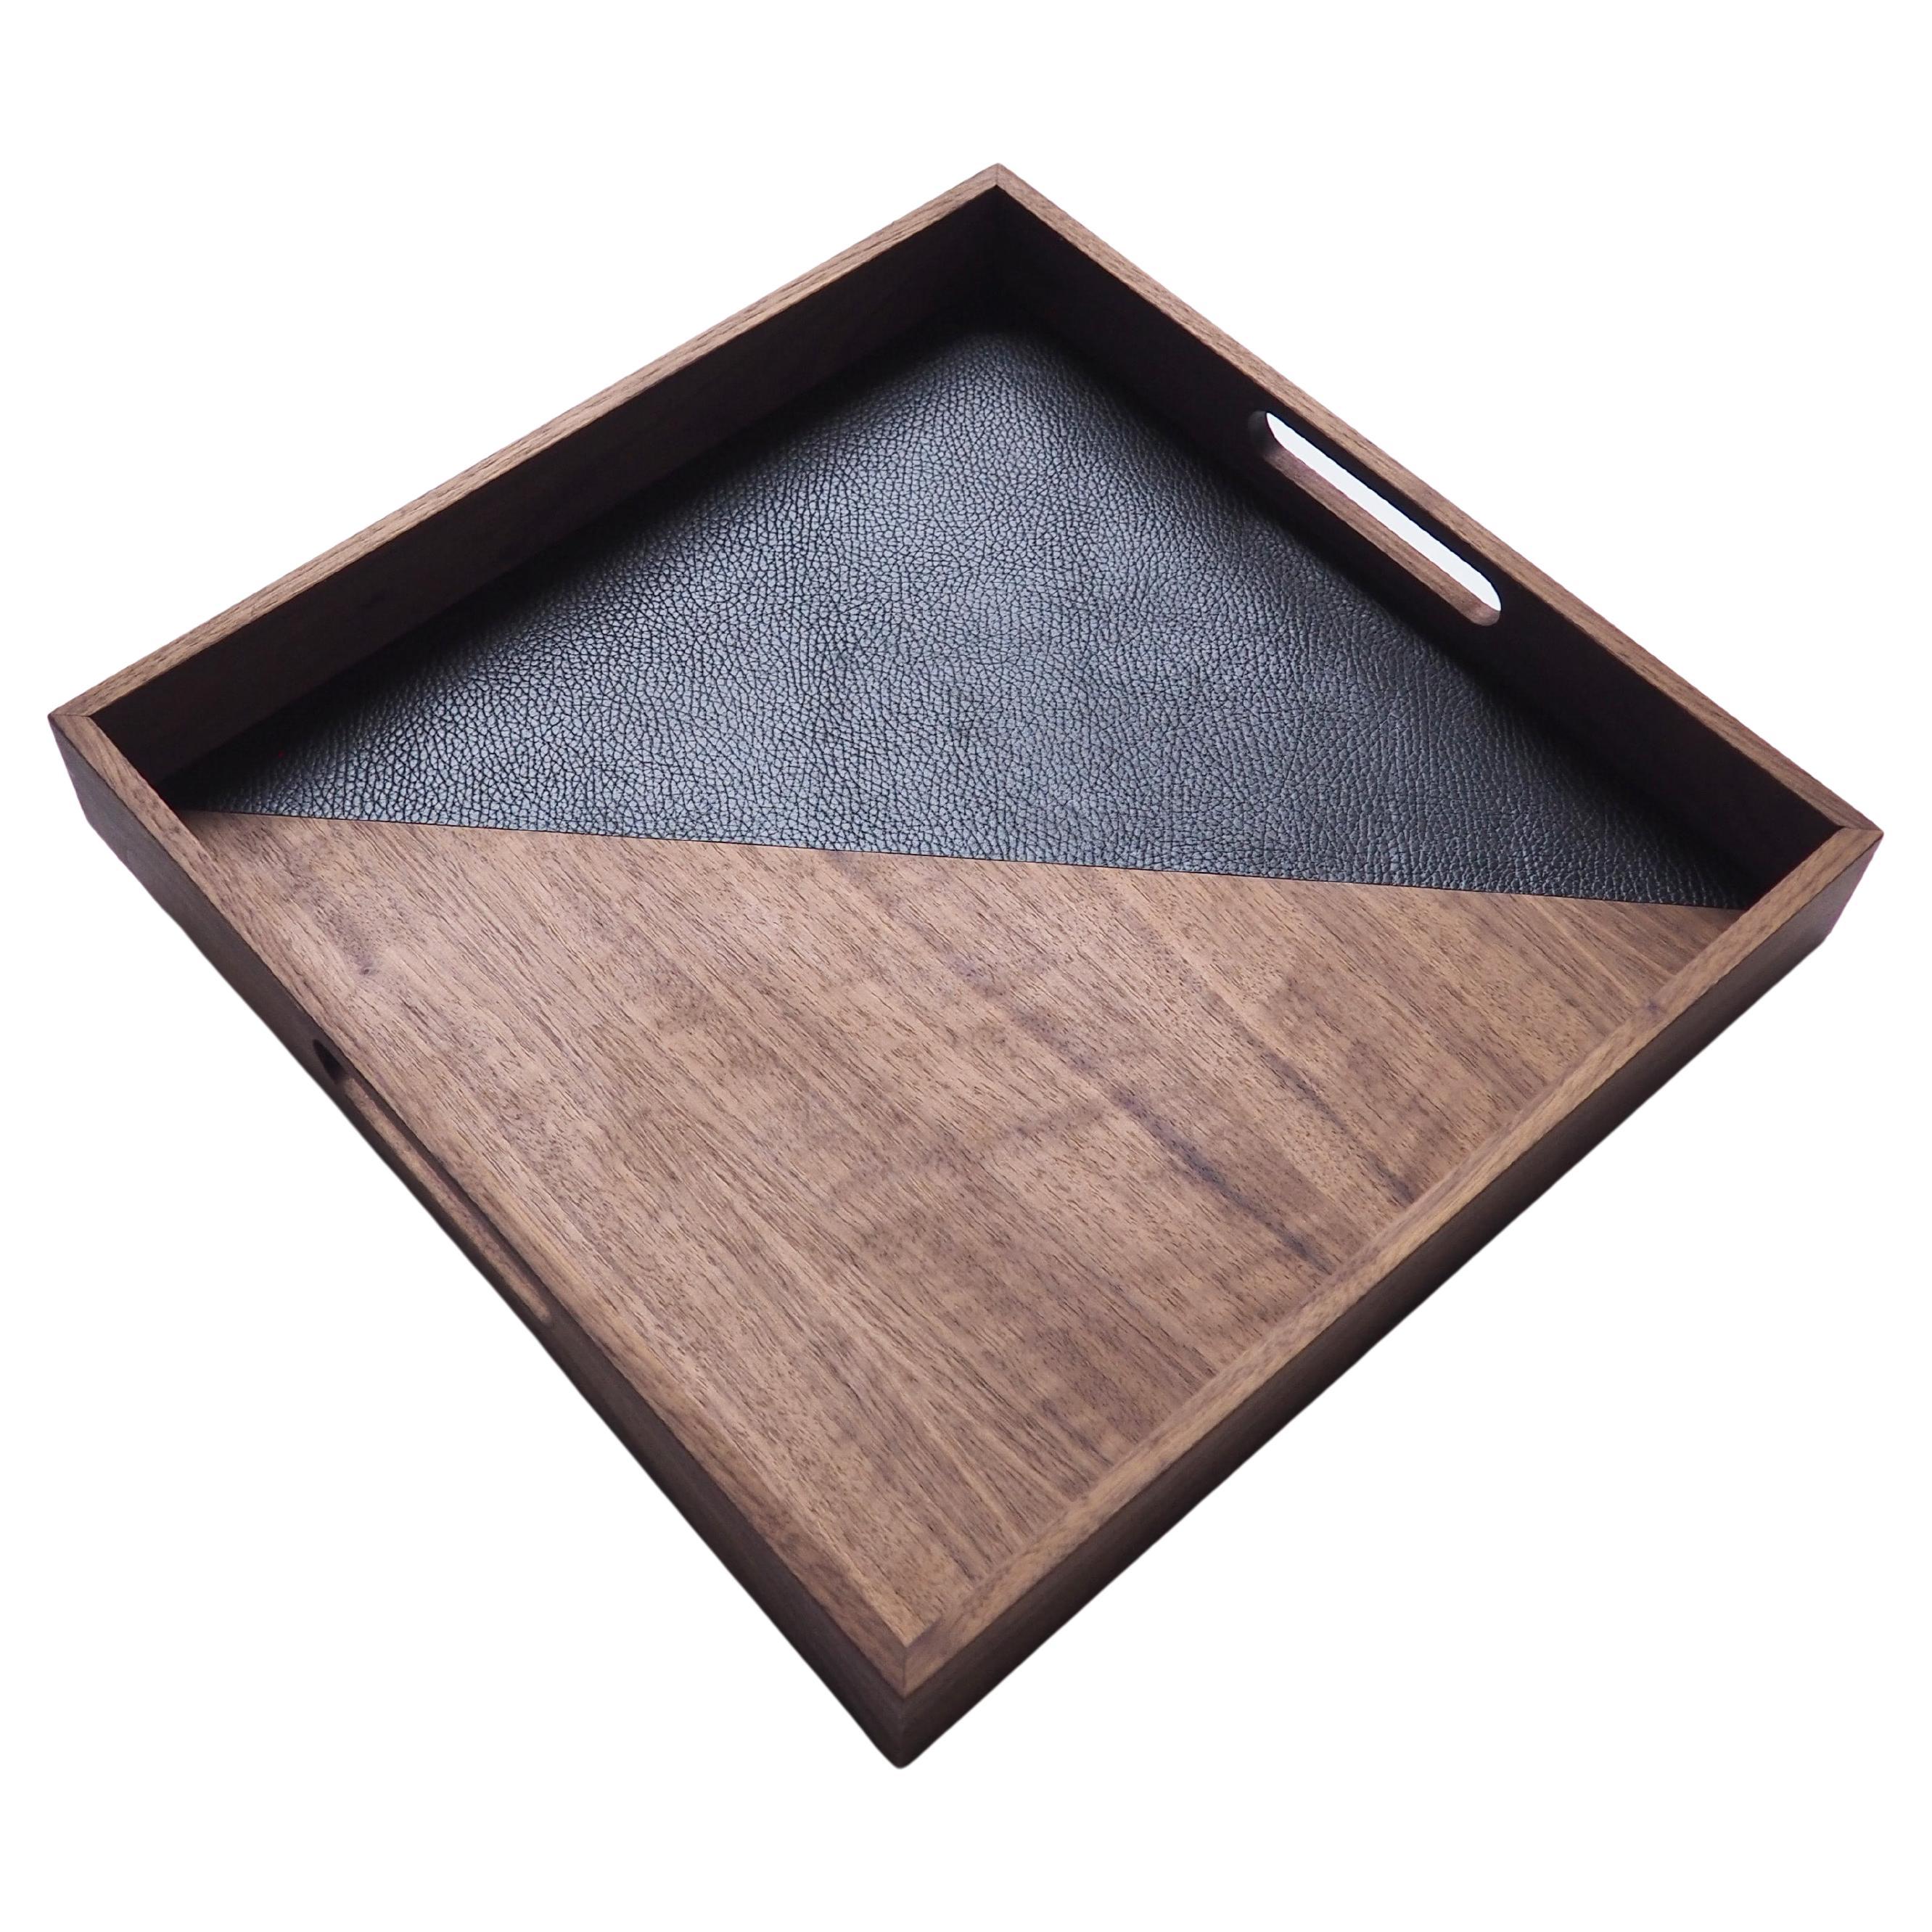 Quadratisches Tablett „After Hours“ aus Nussbaum und schwarzem Leder von Atelier C.u.b